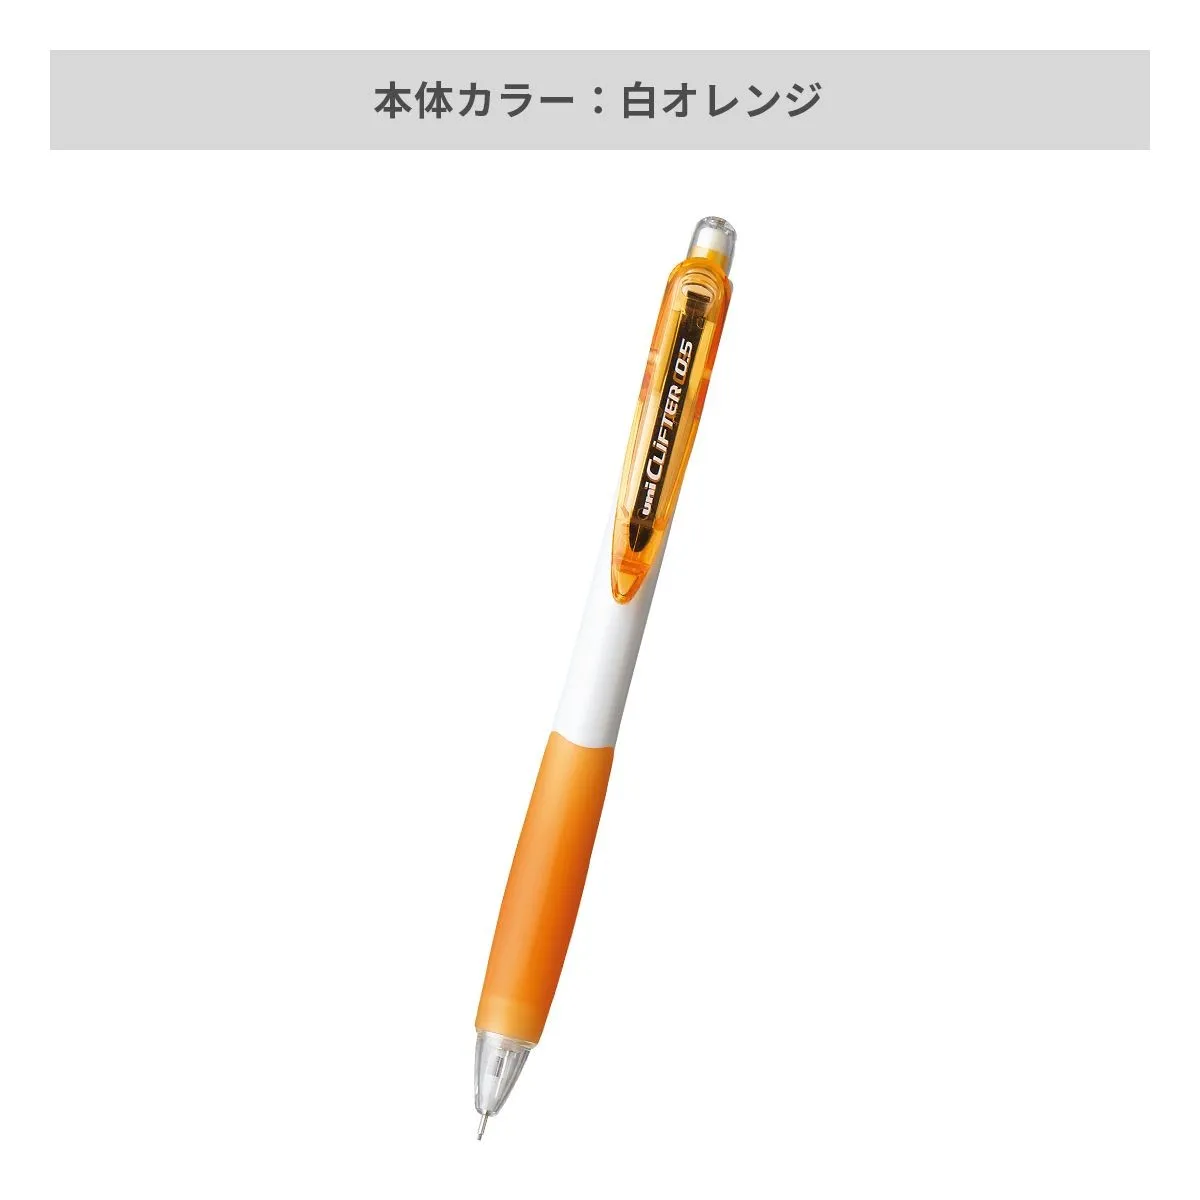 三菱鉛筆 シャープペン クリフター 白軸 0.5mm【名入れシャーペン / パッド印刷】 画像5